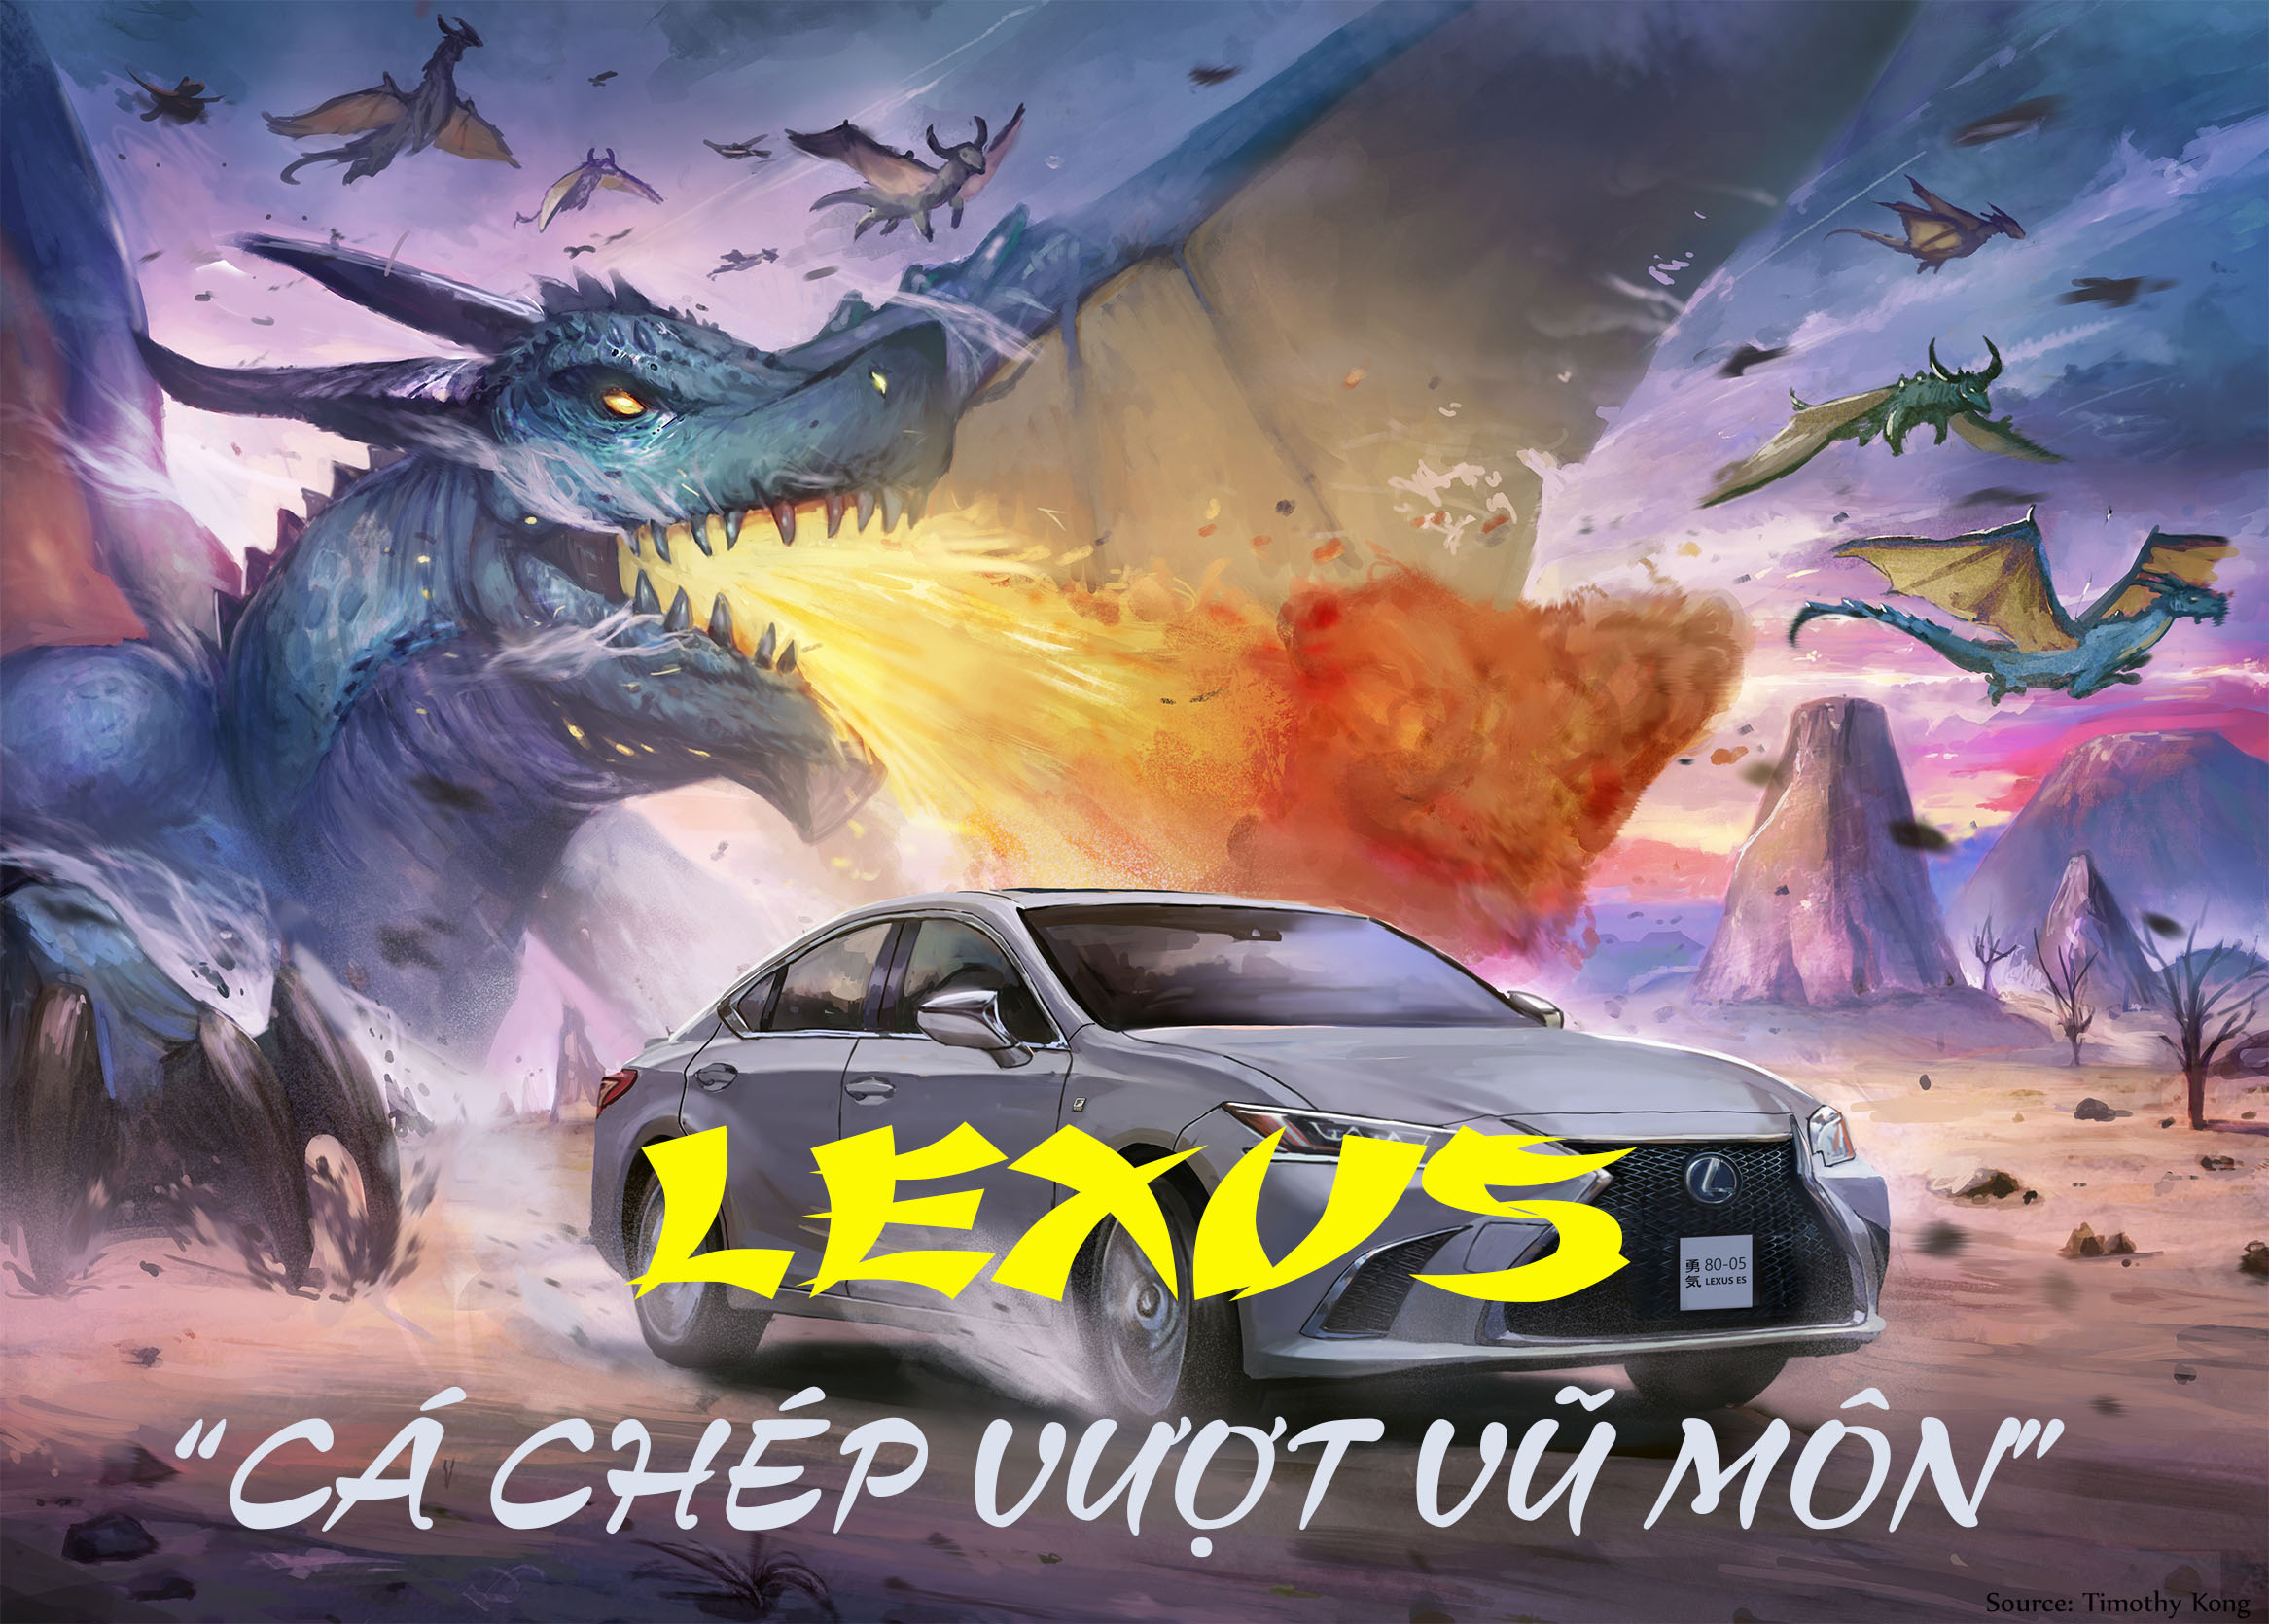 Lexus: “Khi cá chép vượt vũ môn hoá rồng” - 1